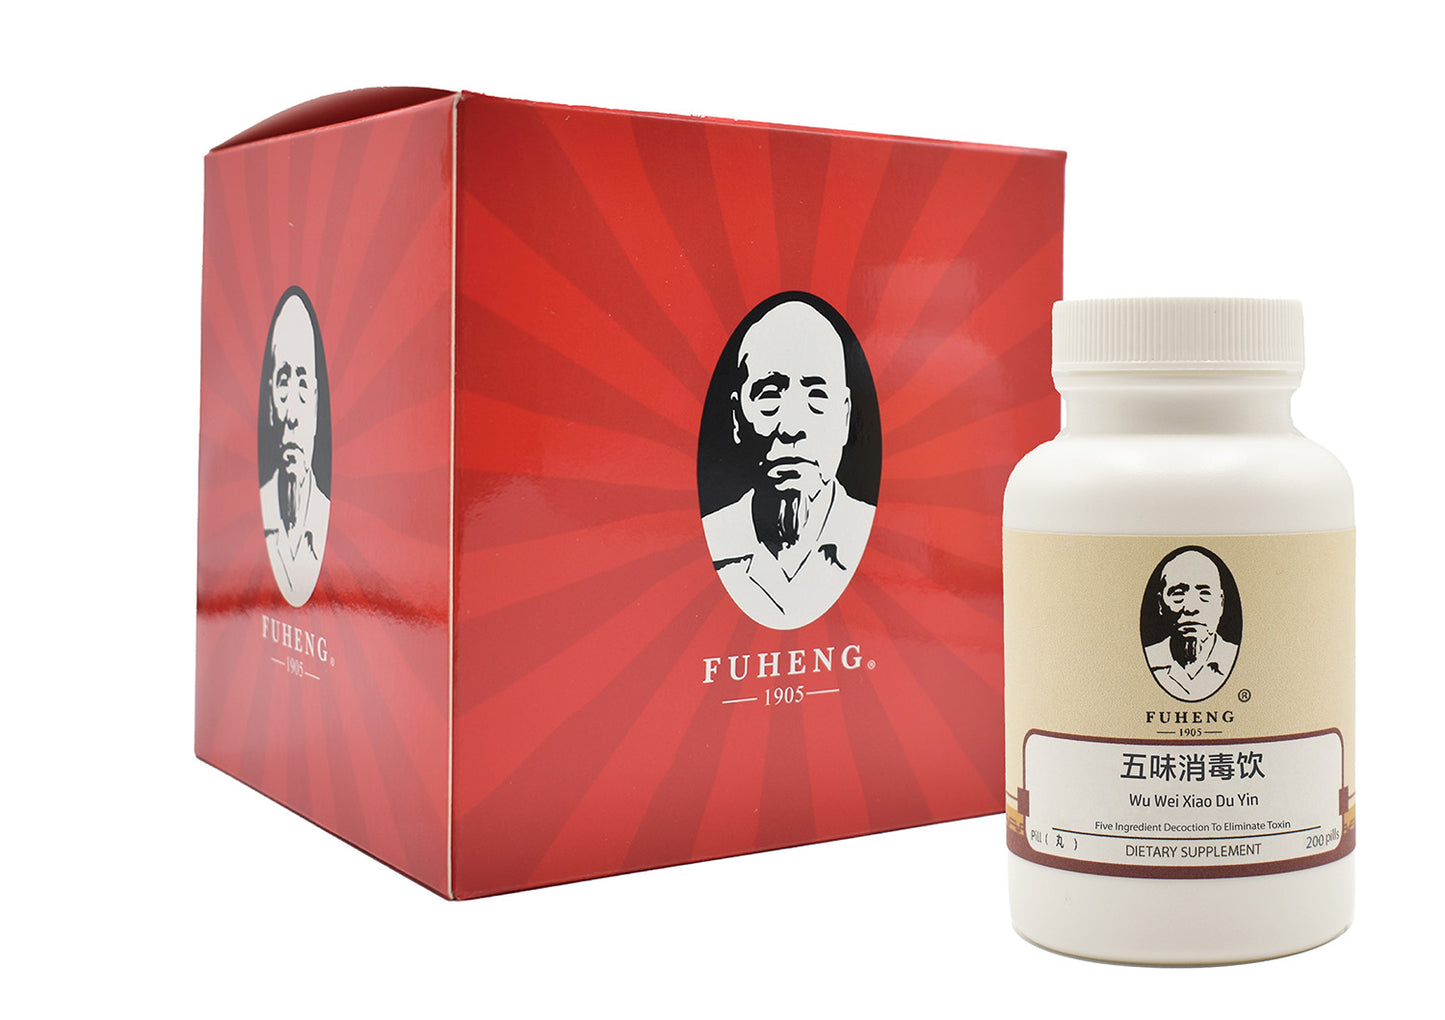 Wu Wei Xiao Du Yin - 五味消毒饮 - 丸剂 - Five Ingredient Decoction To Eliminate Toxin - FUHENG福恒 - Since 1905 - 200 pills